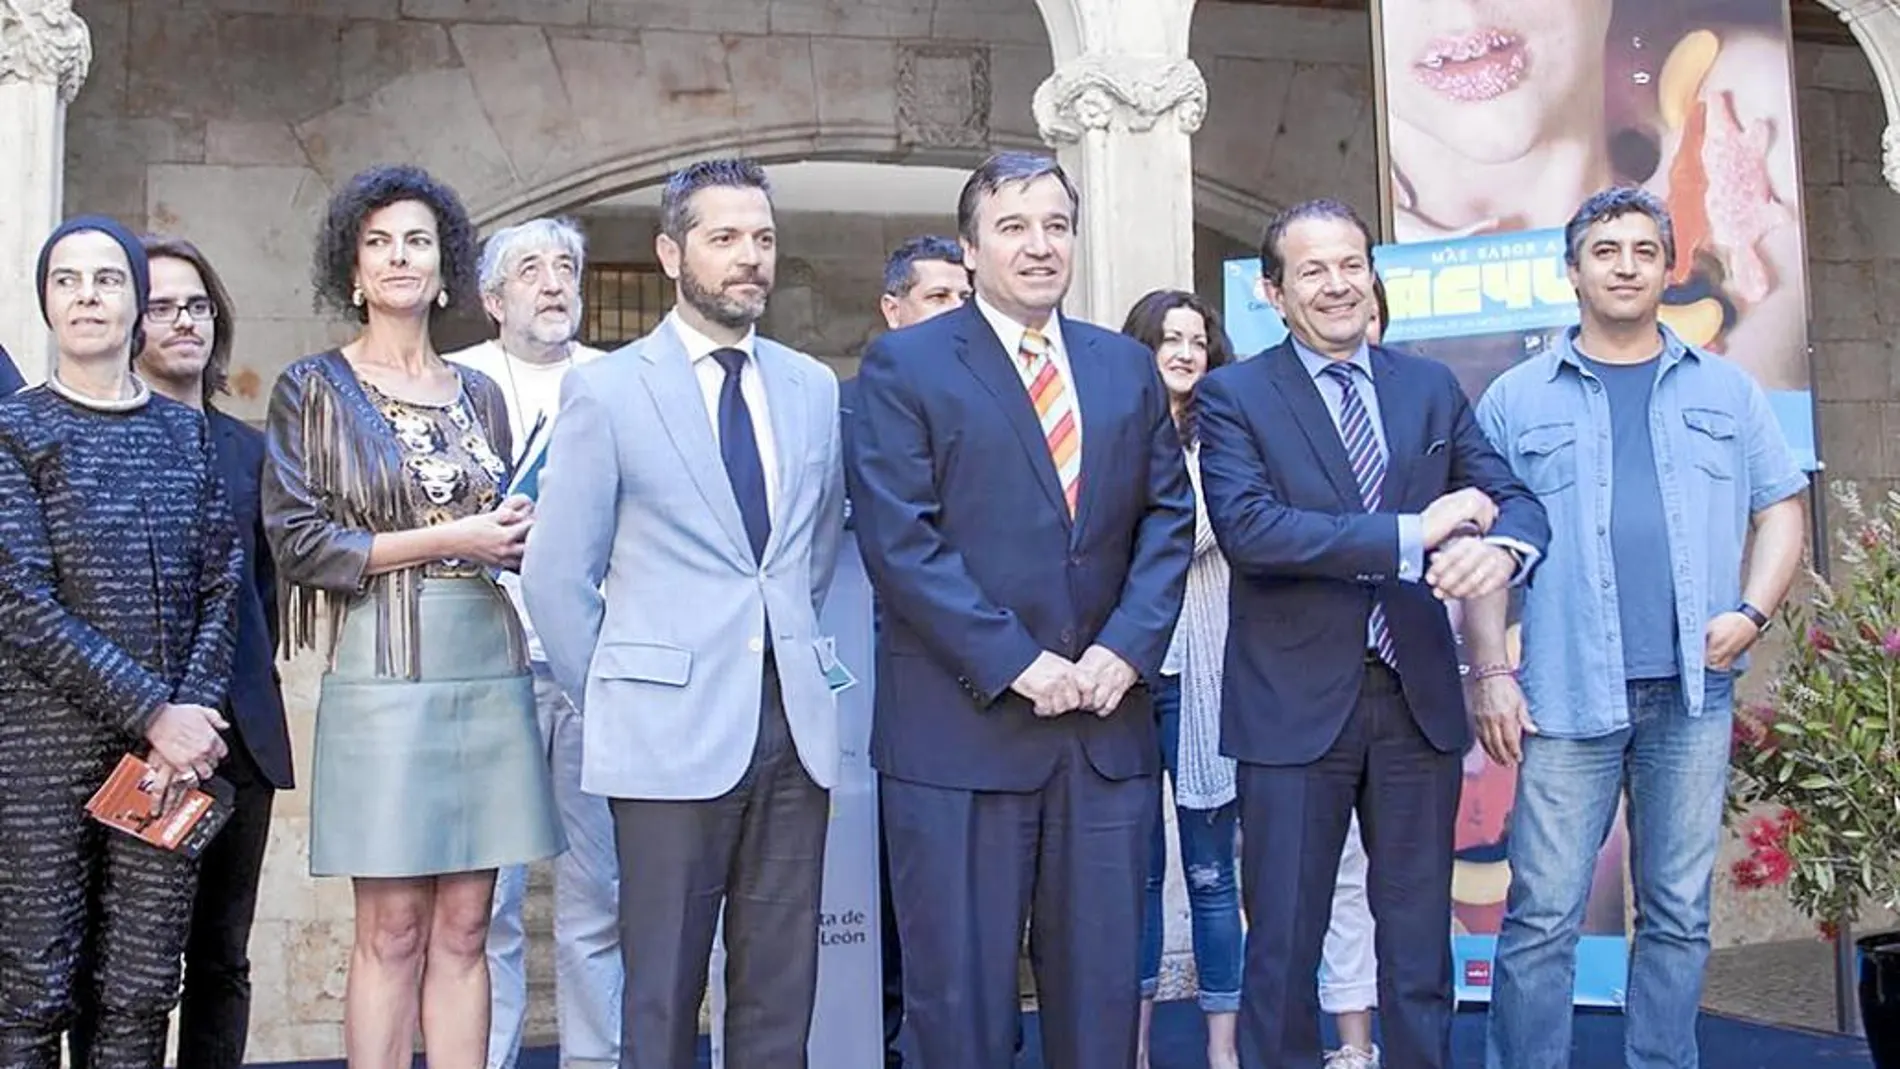 El director de Políticas Culturales, José Ramón Alonso, presenta el certamen junto con representantes políticos y de las compañías artísticas